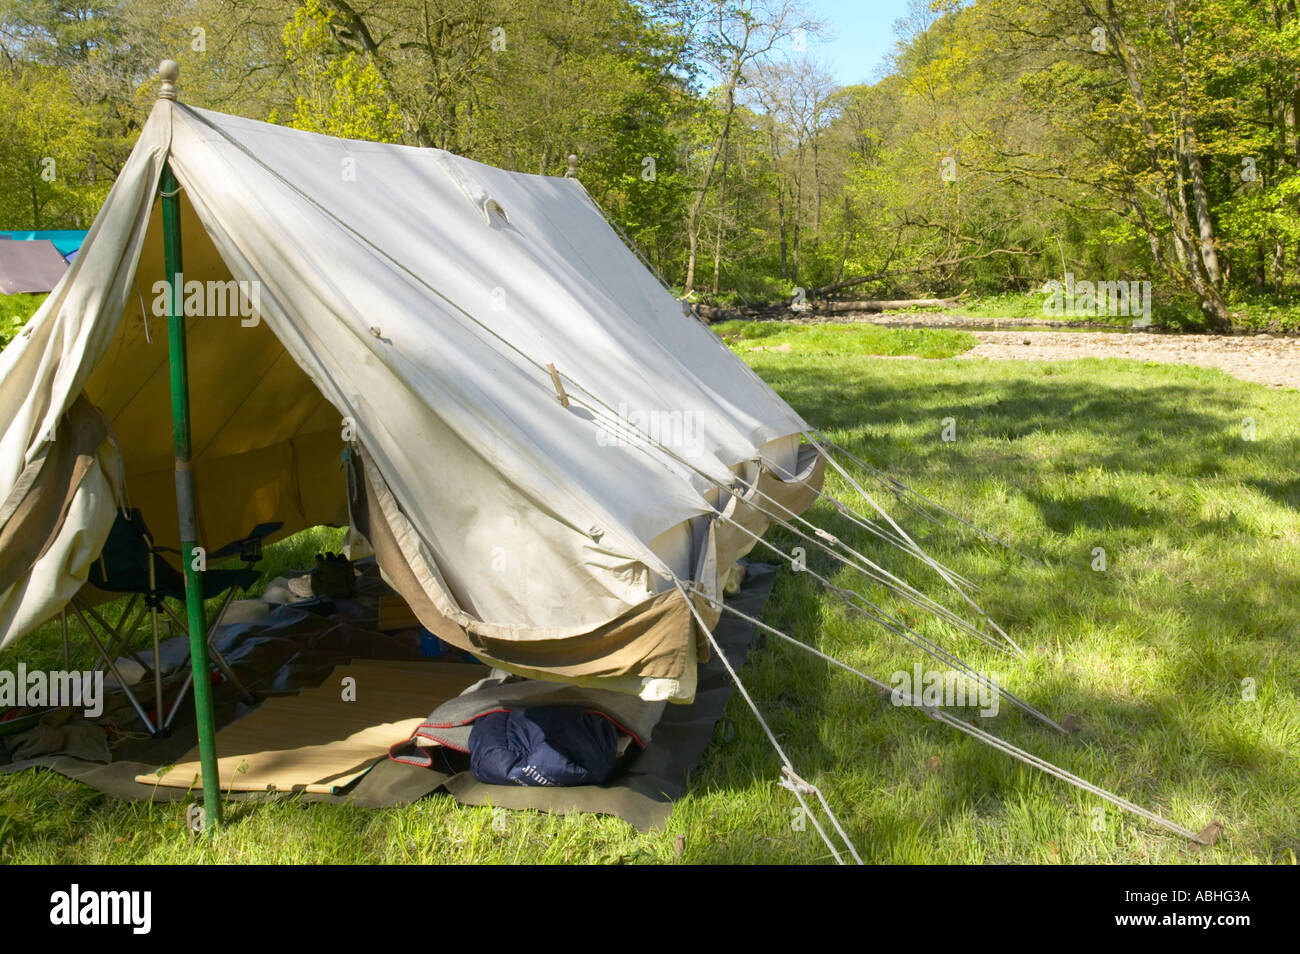 Monter une tente scoute — LaToileScoute